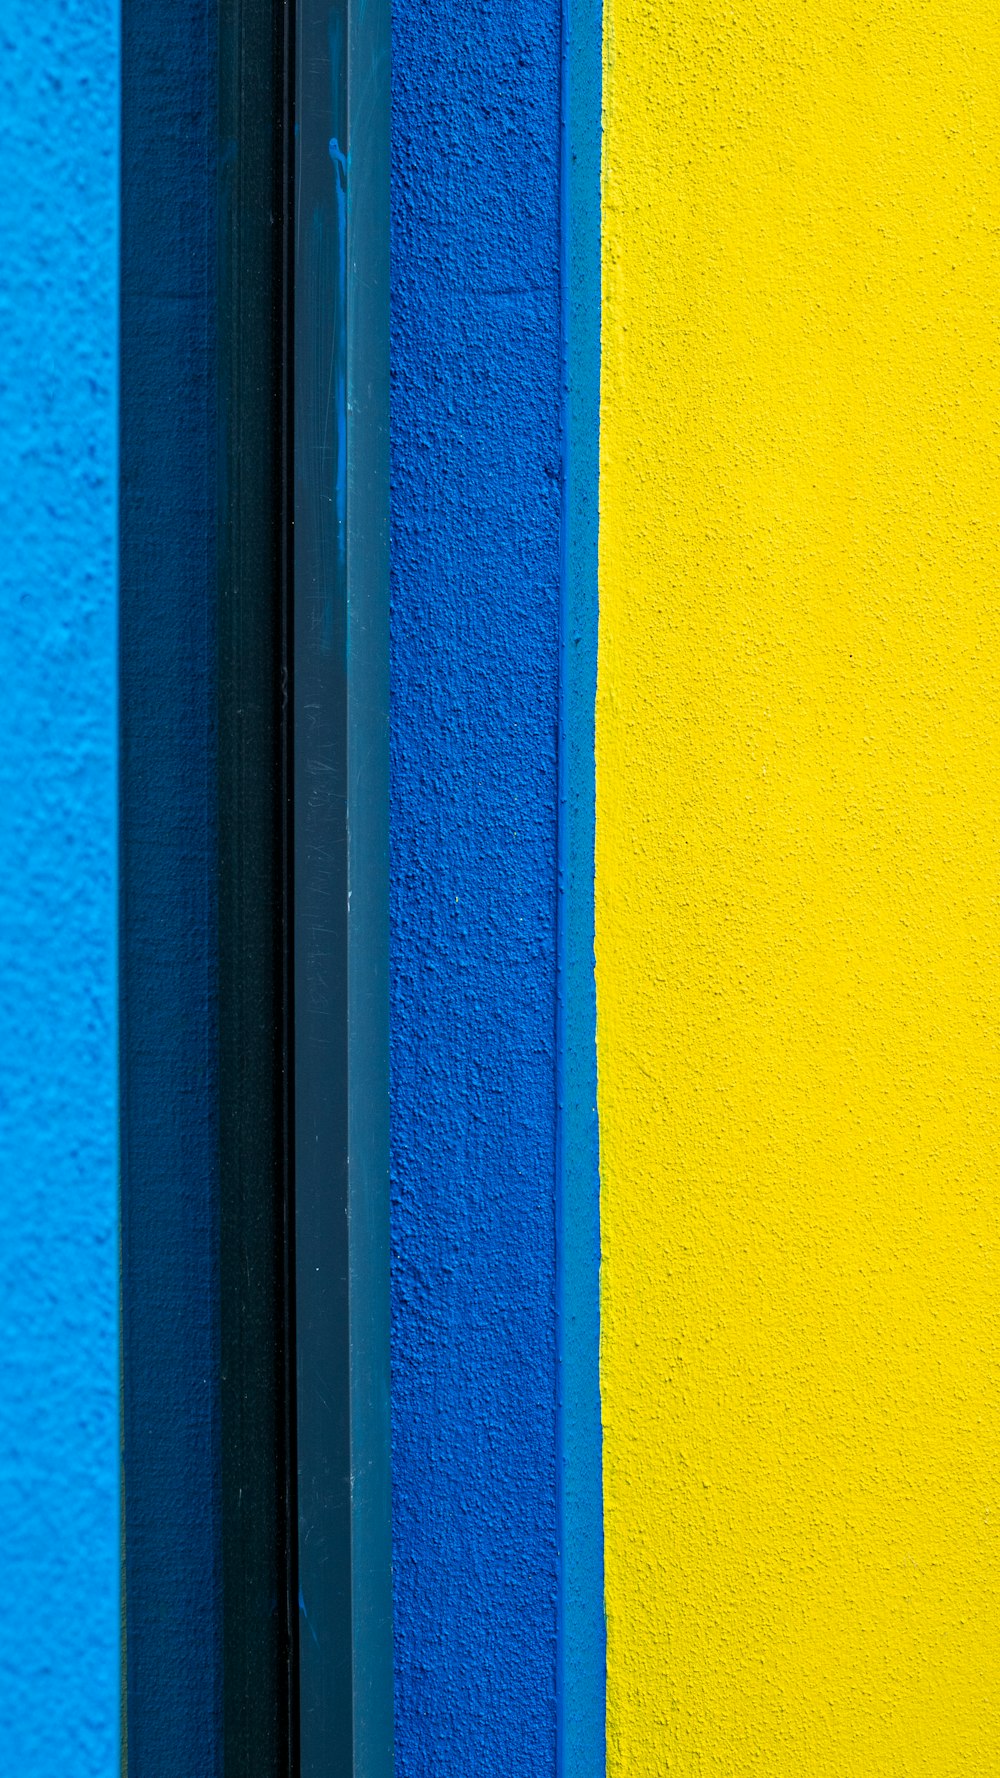 parede pintada de azul e cinza